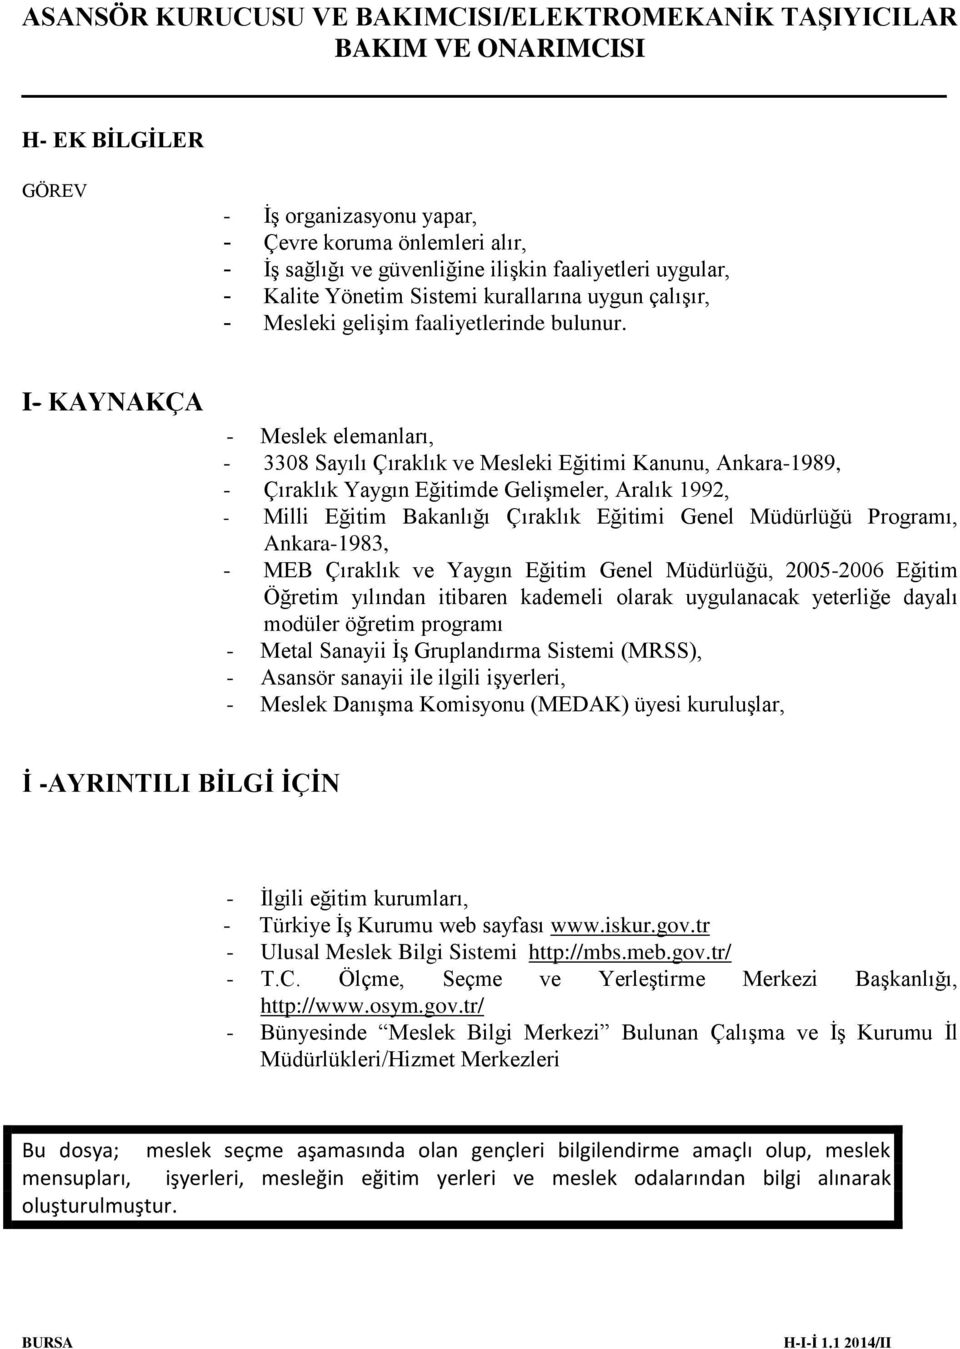 I- KAYNAKÇA - Meslek elemanları, - 3308 Sayılı Çıraklık ve Mesleki Eğitimi Kanunu, Ankara-1989, - Çıraklık Yaygın Eğitimde Gelişmeler, Aralık 1992, - Milli Eğitim Bakanlığı Çıraklık Eğitimi Genel